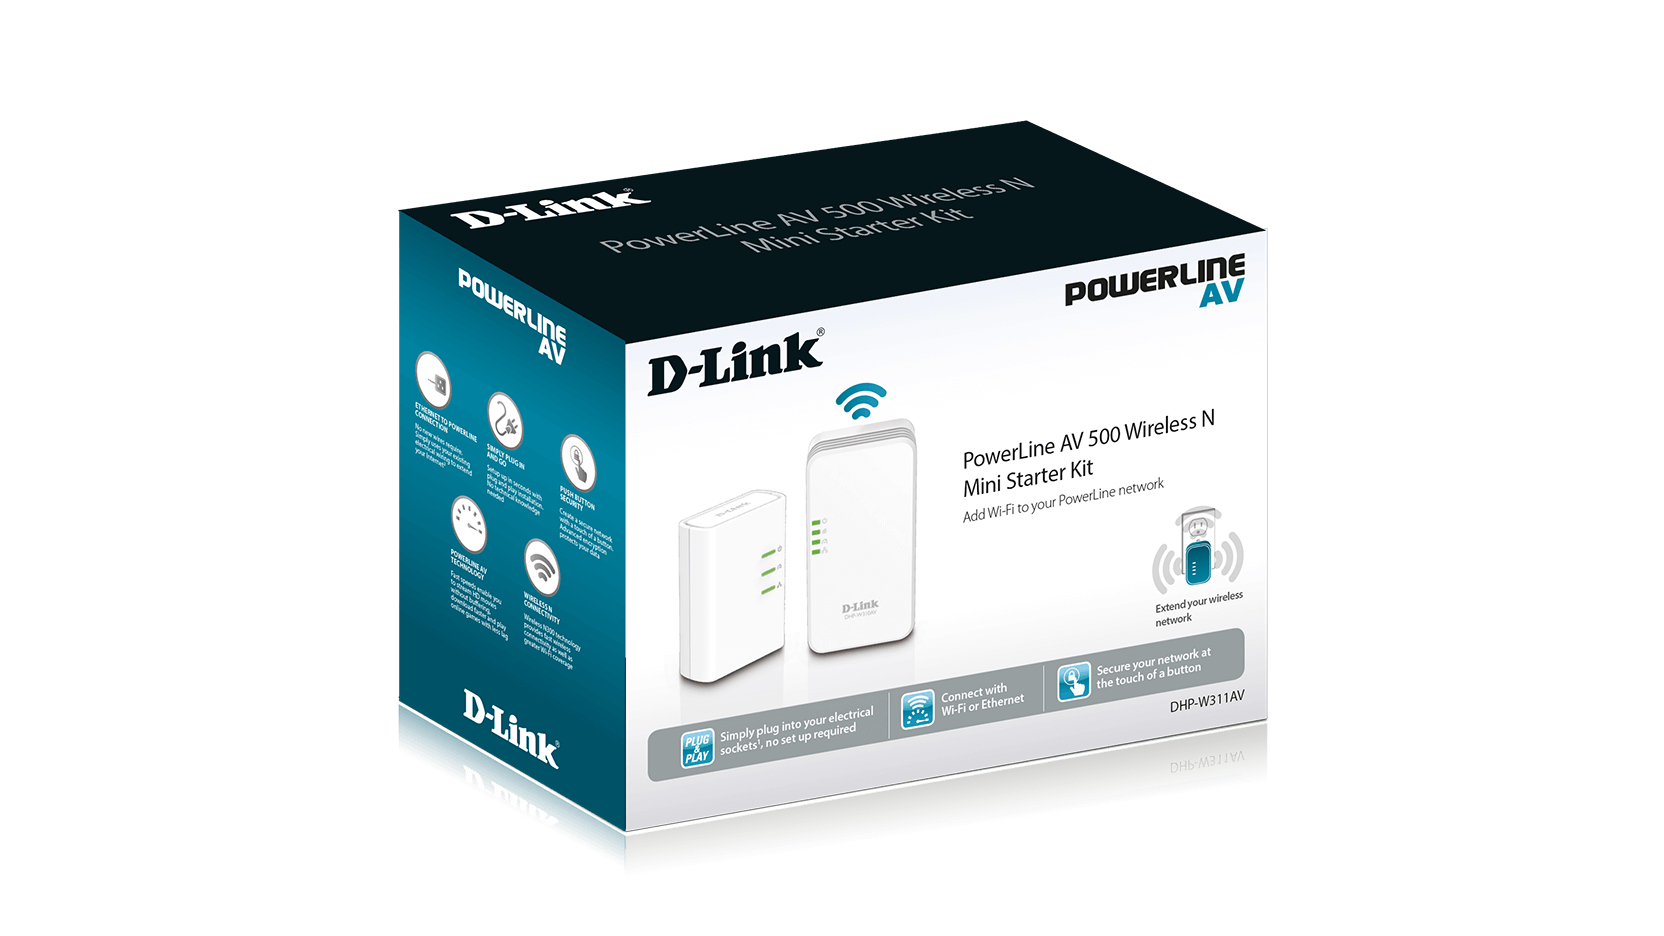 D-link DHP-W311AV Power Line Wireless N Mini Starter Kit 